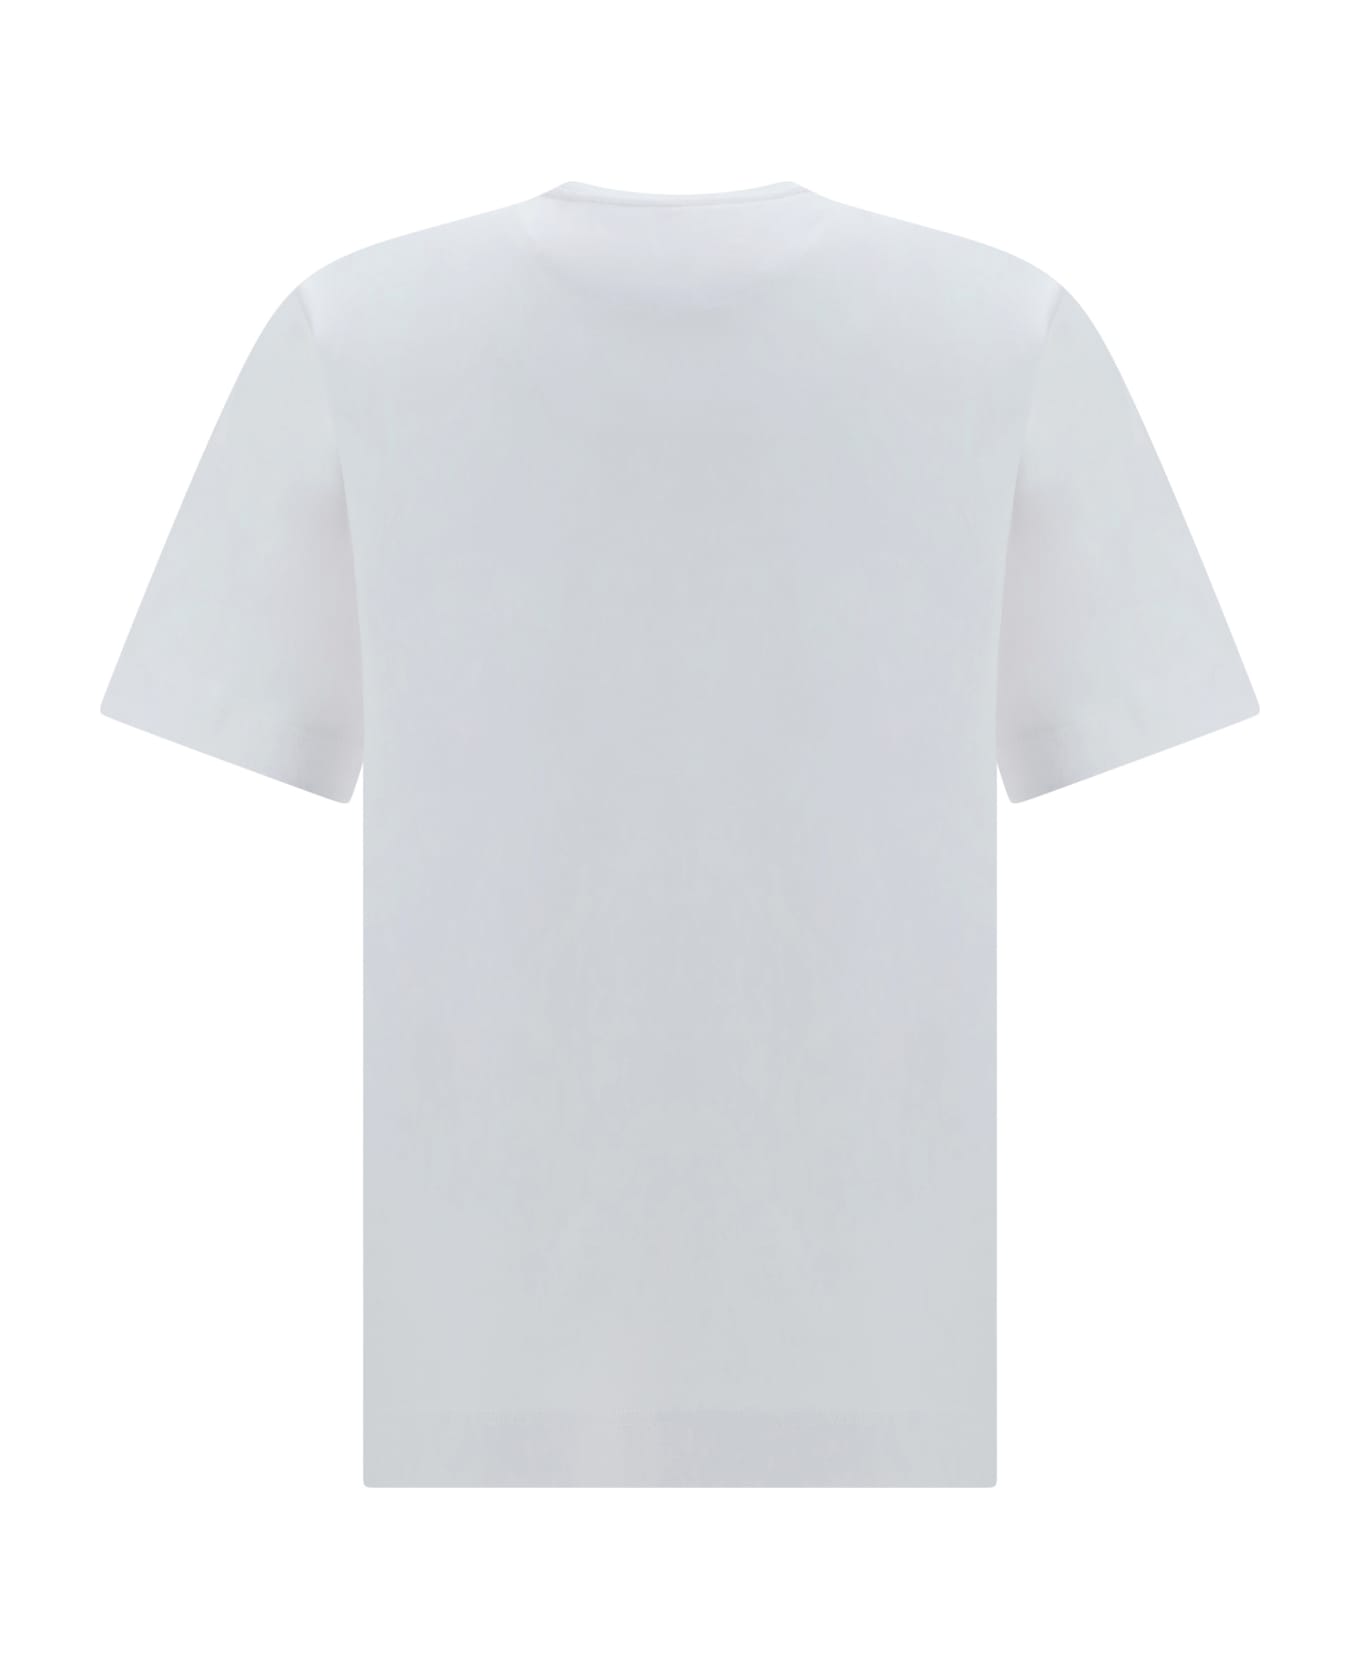 Fendi T-shirt - Bianco シャツ